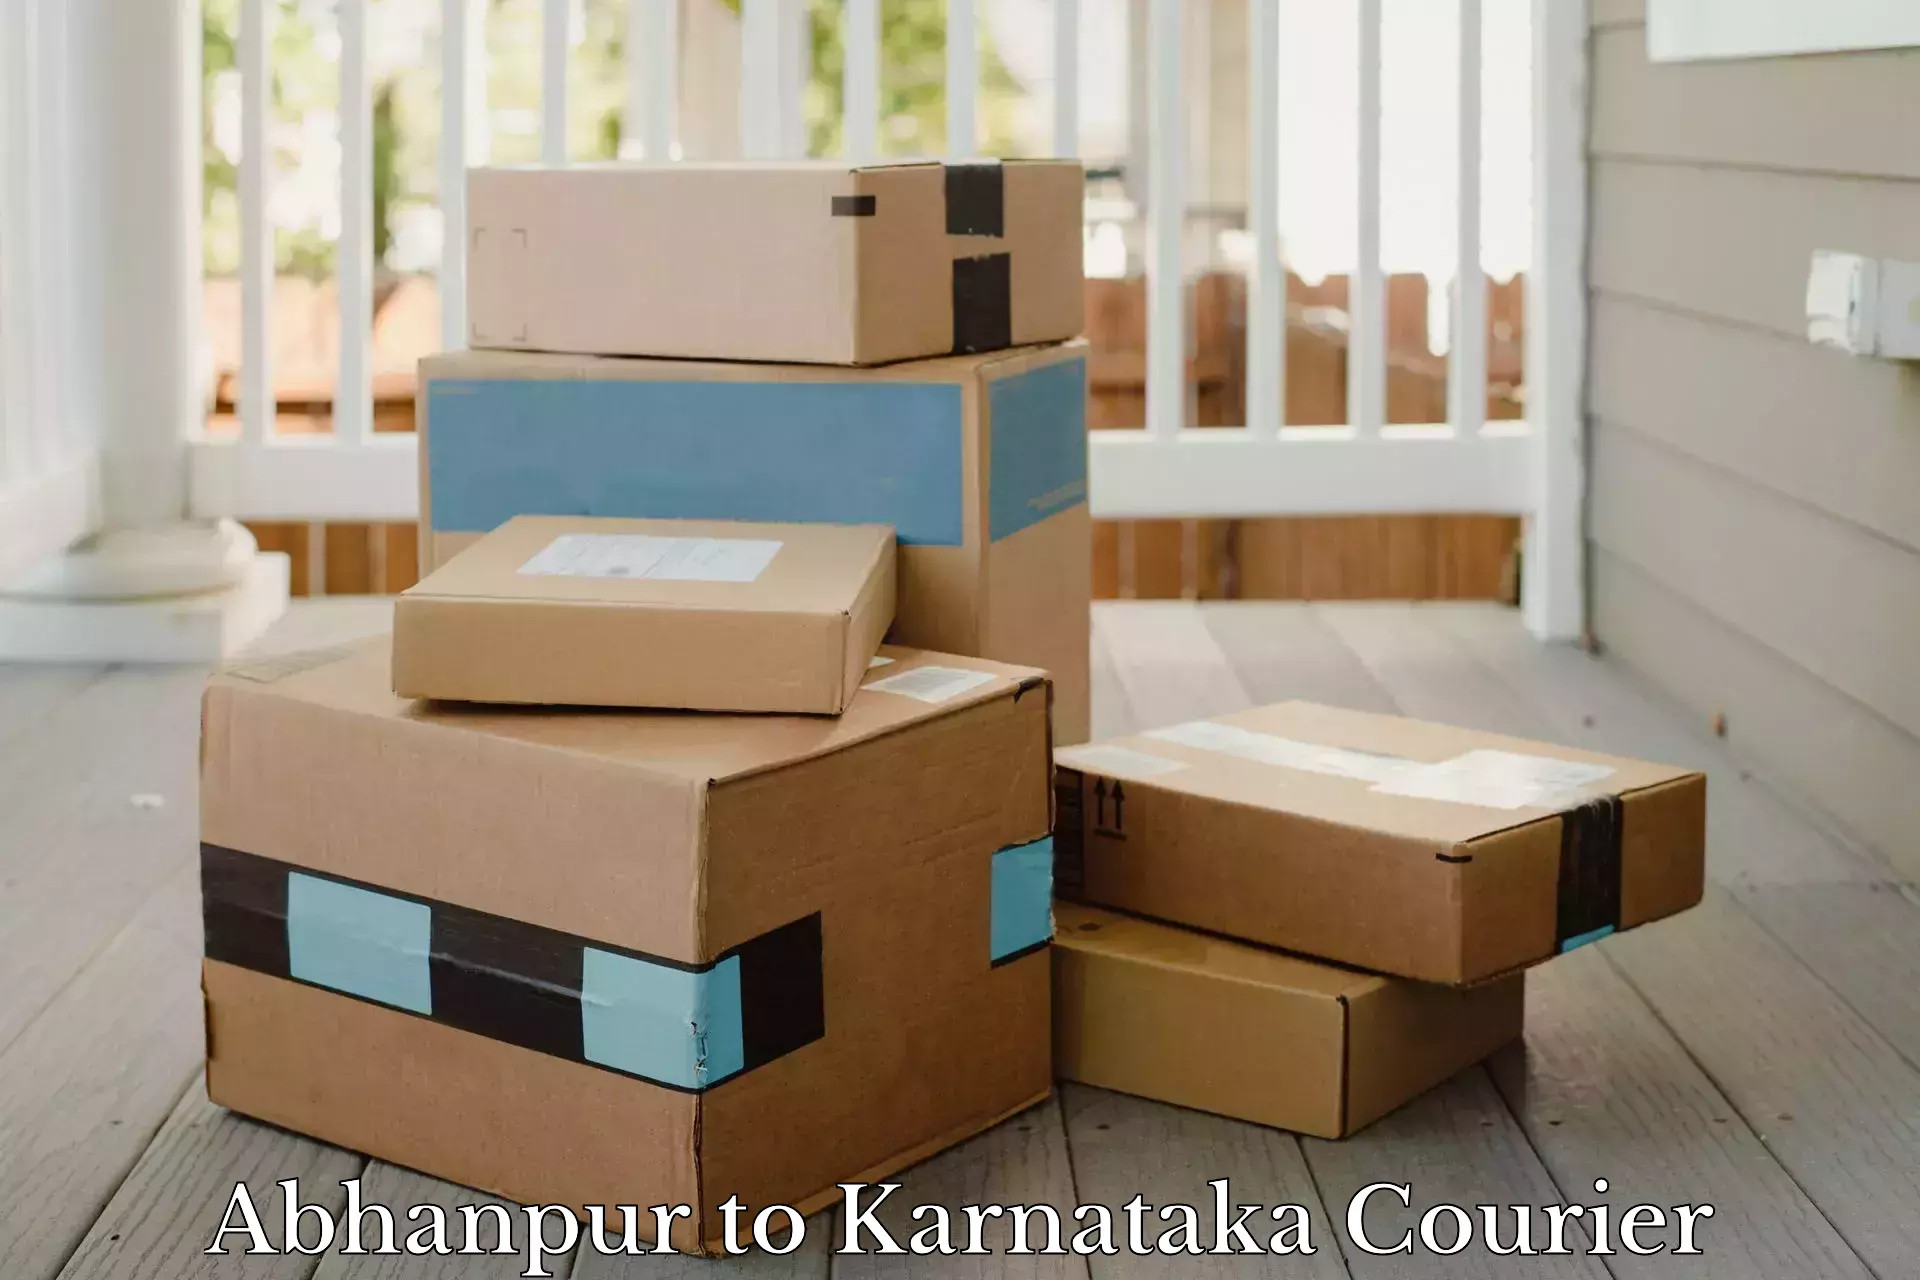 Door-to-door freight service Abhanpur to Karnataka